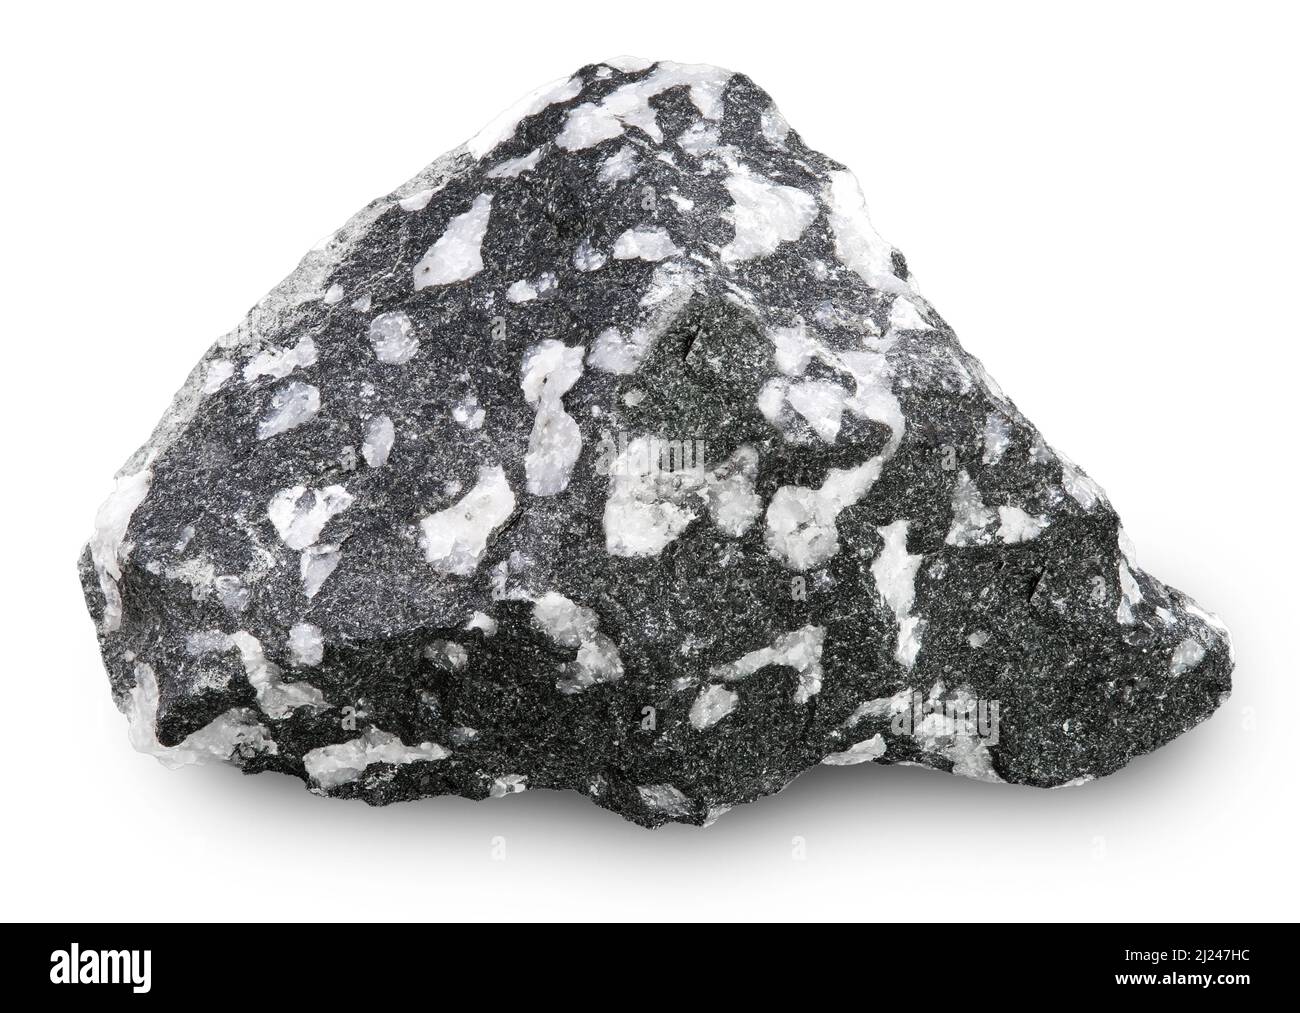 Andesite Porphyry, Igneous Rock, Volcanic, Mexico Stock Photo